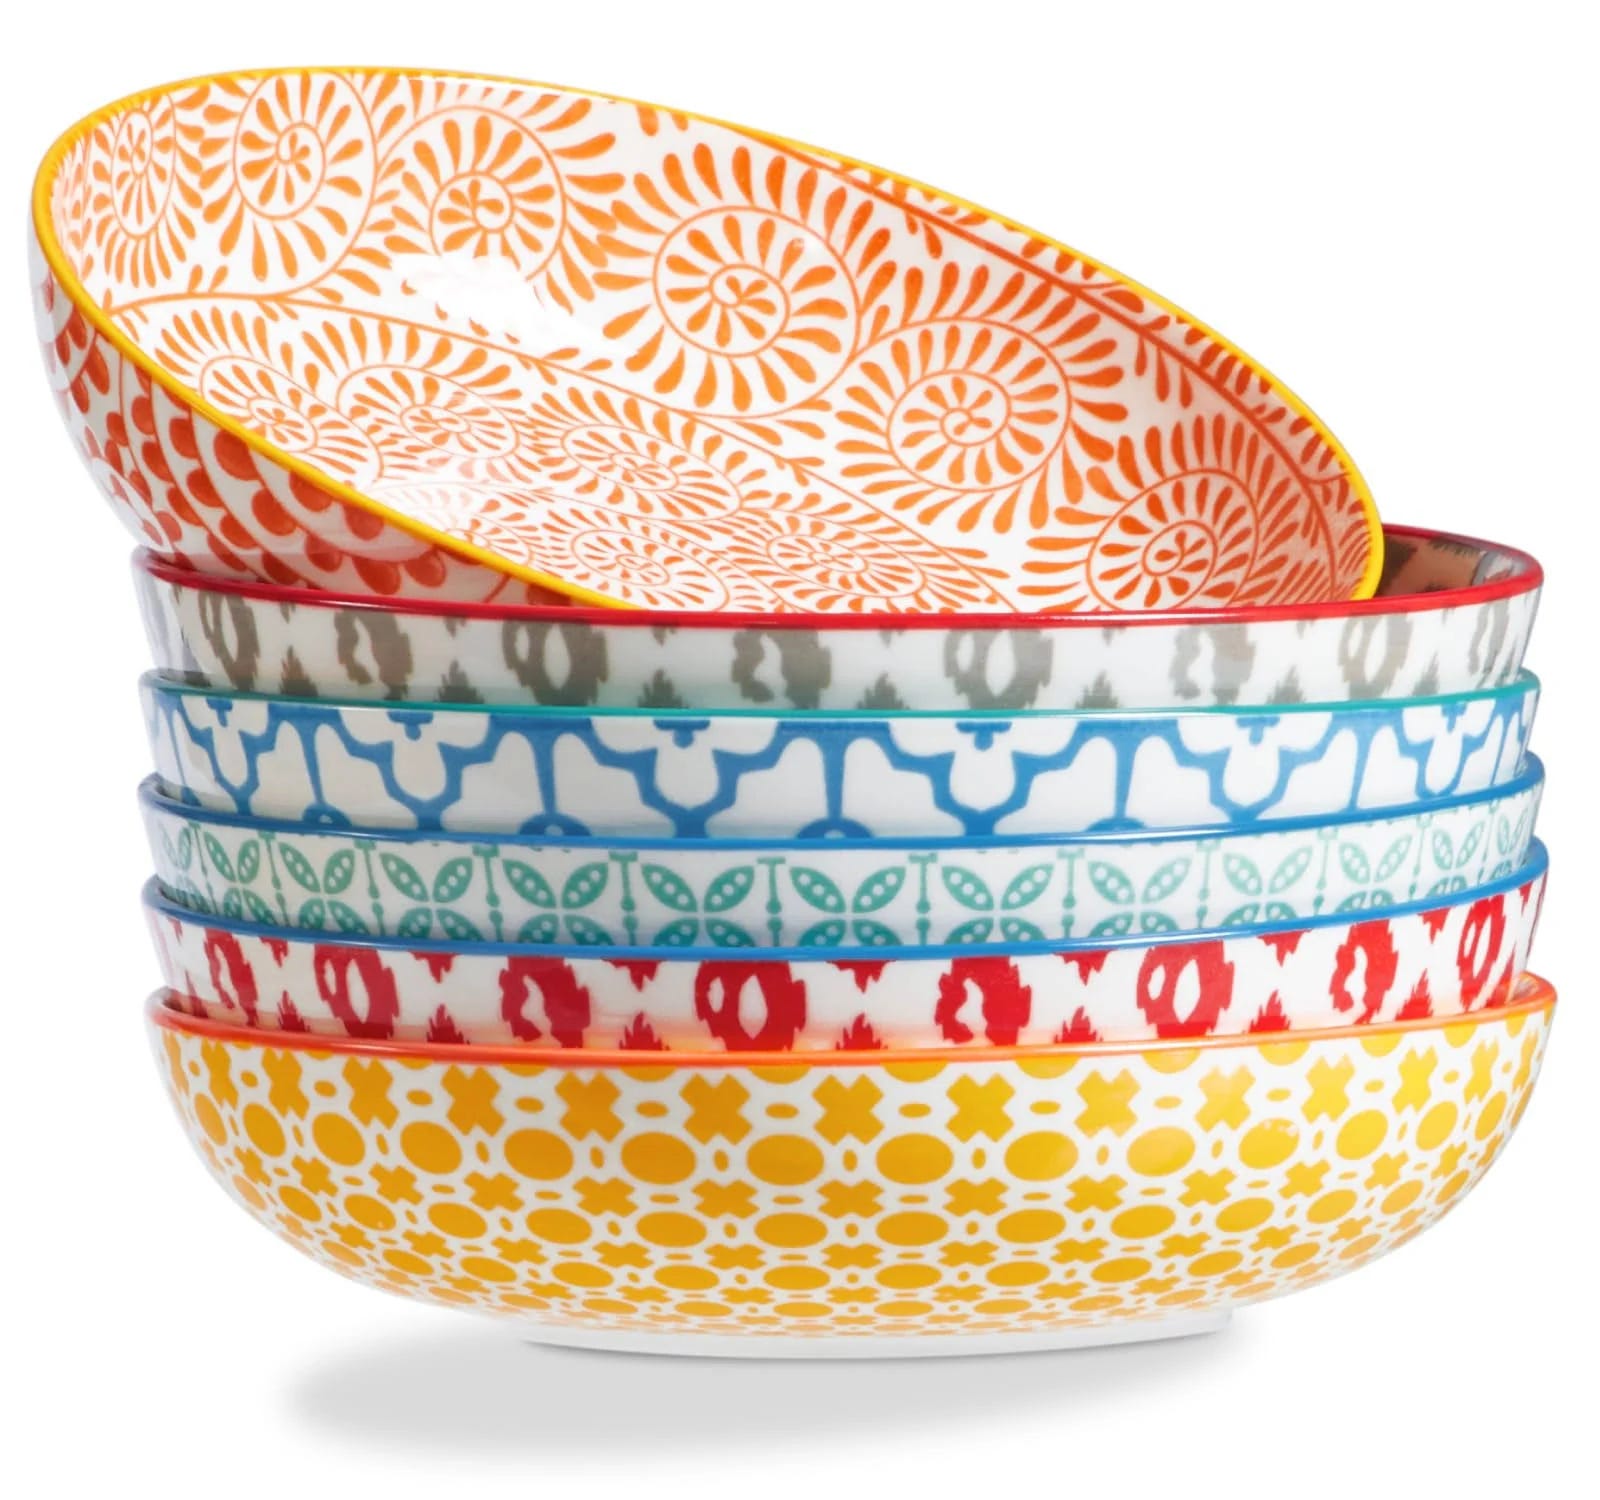 Colorful Oven-Safe Pasta Bowls Set of 6 | Image